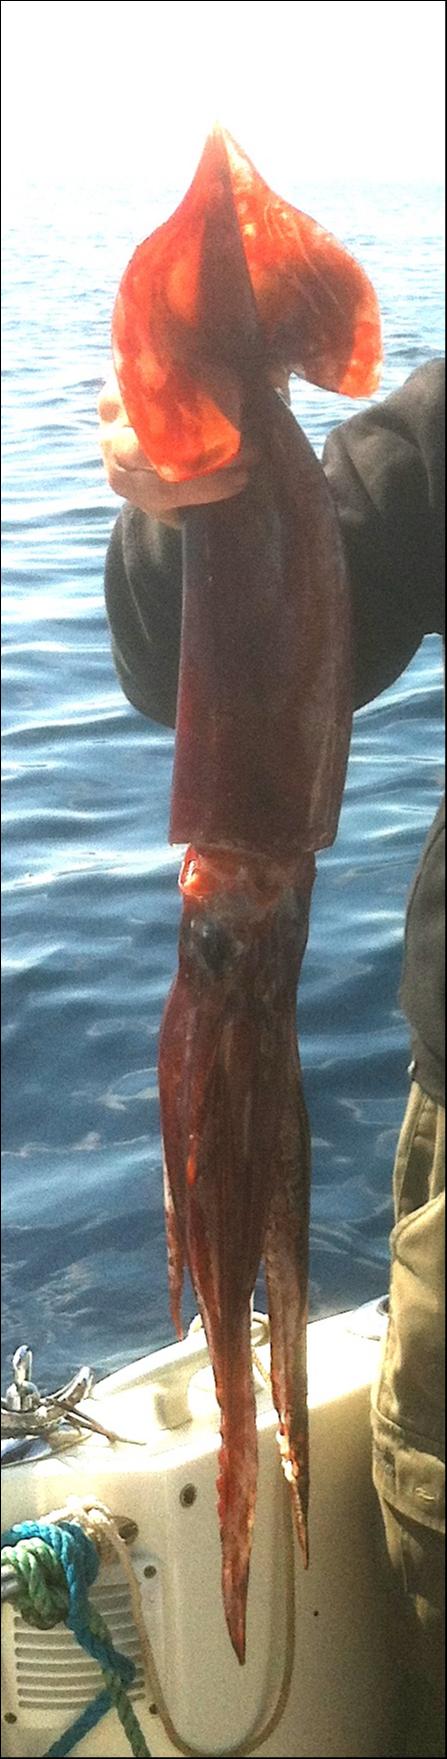 Un beau calamars rouge capture par p kuttler 6